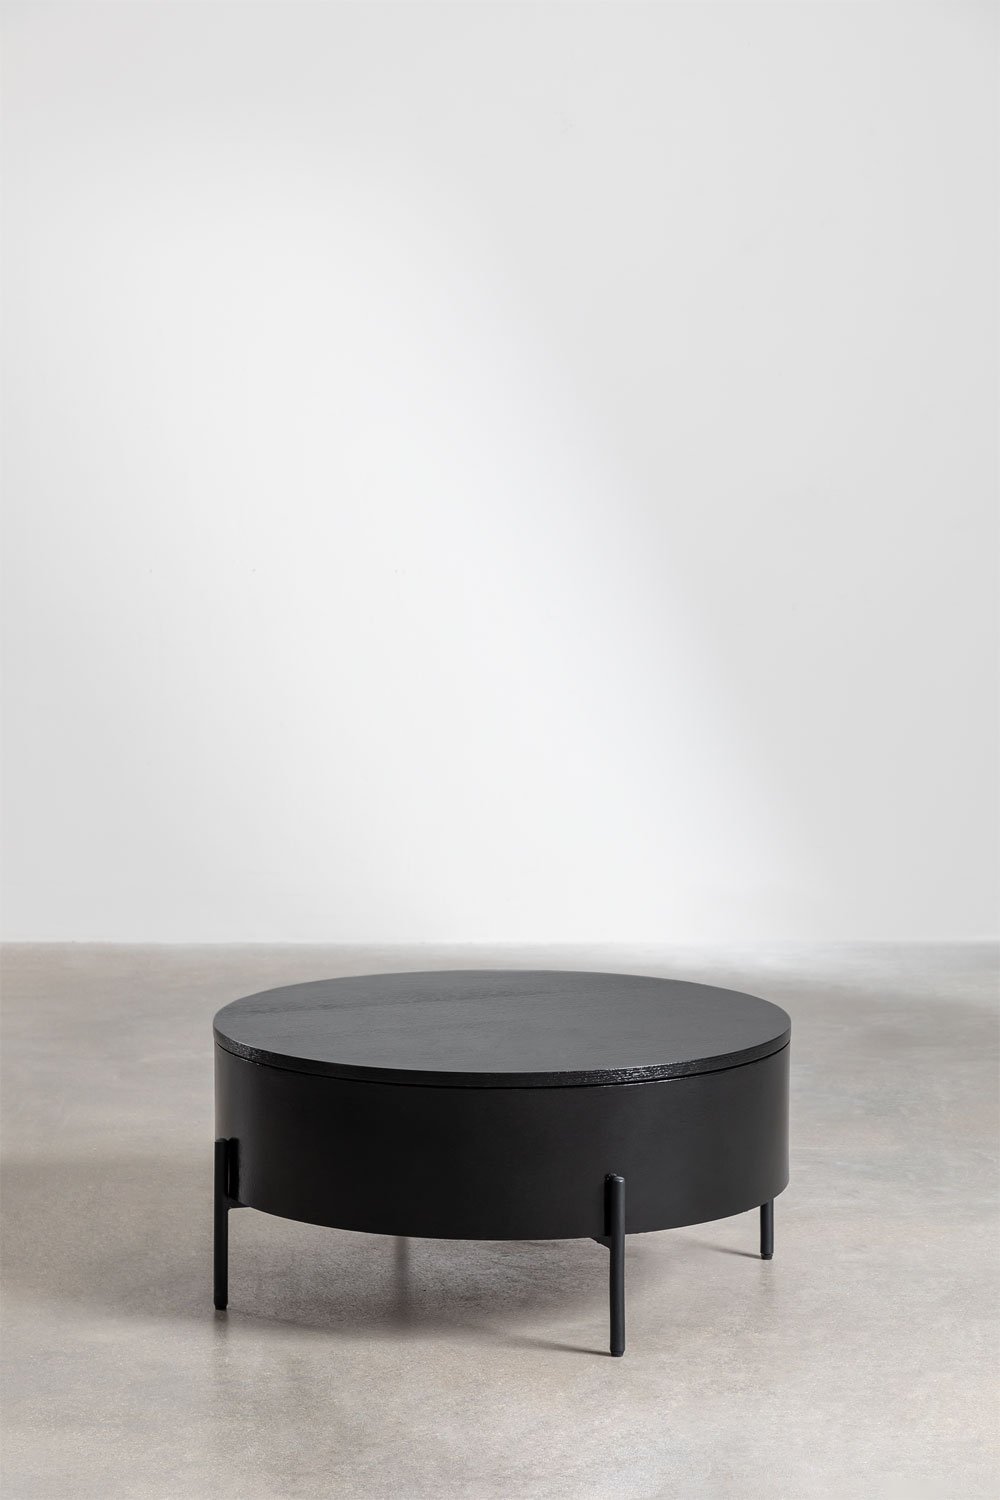 Tavolino Rotondo Elevabile in Legno e Acciaio (Ø80 cm) Tainara, immagine della galleria 1